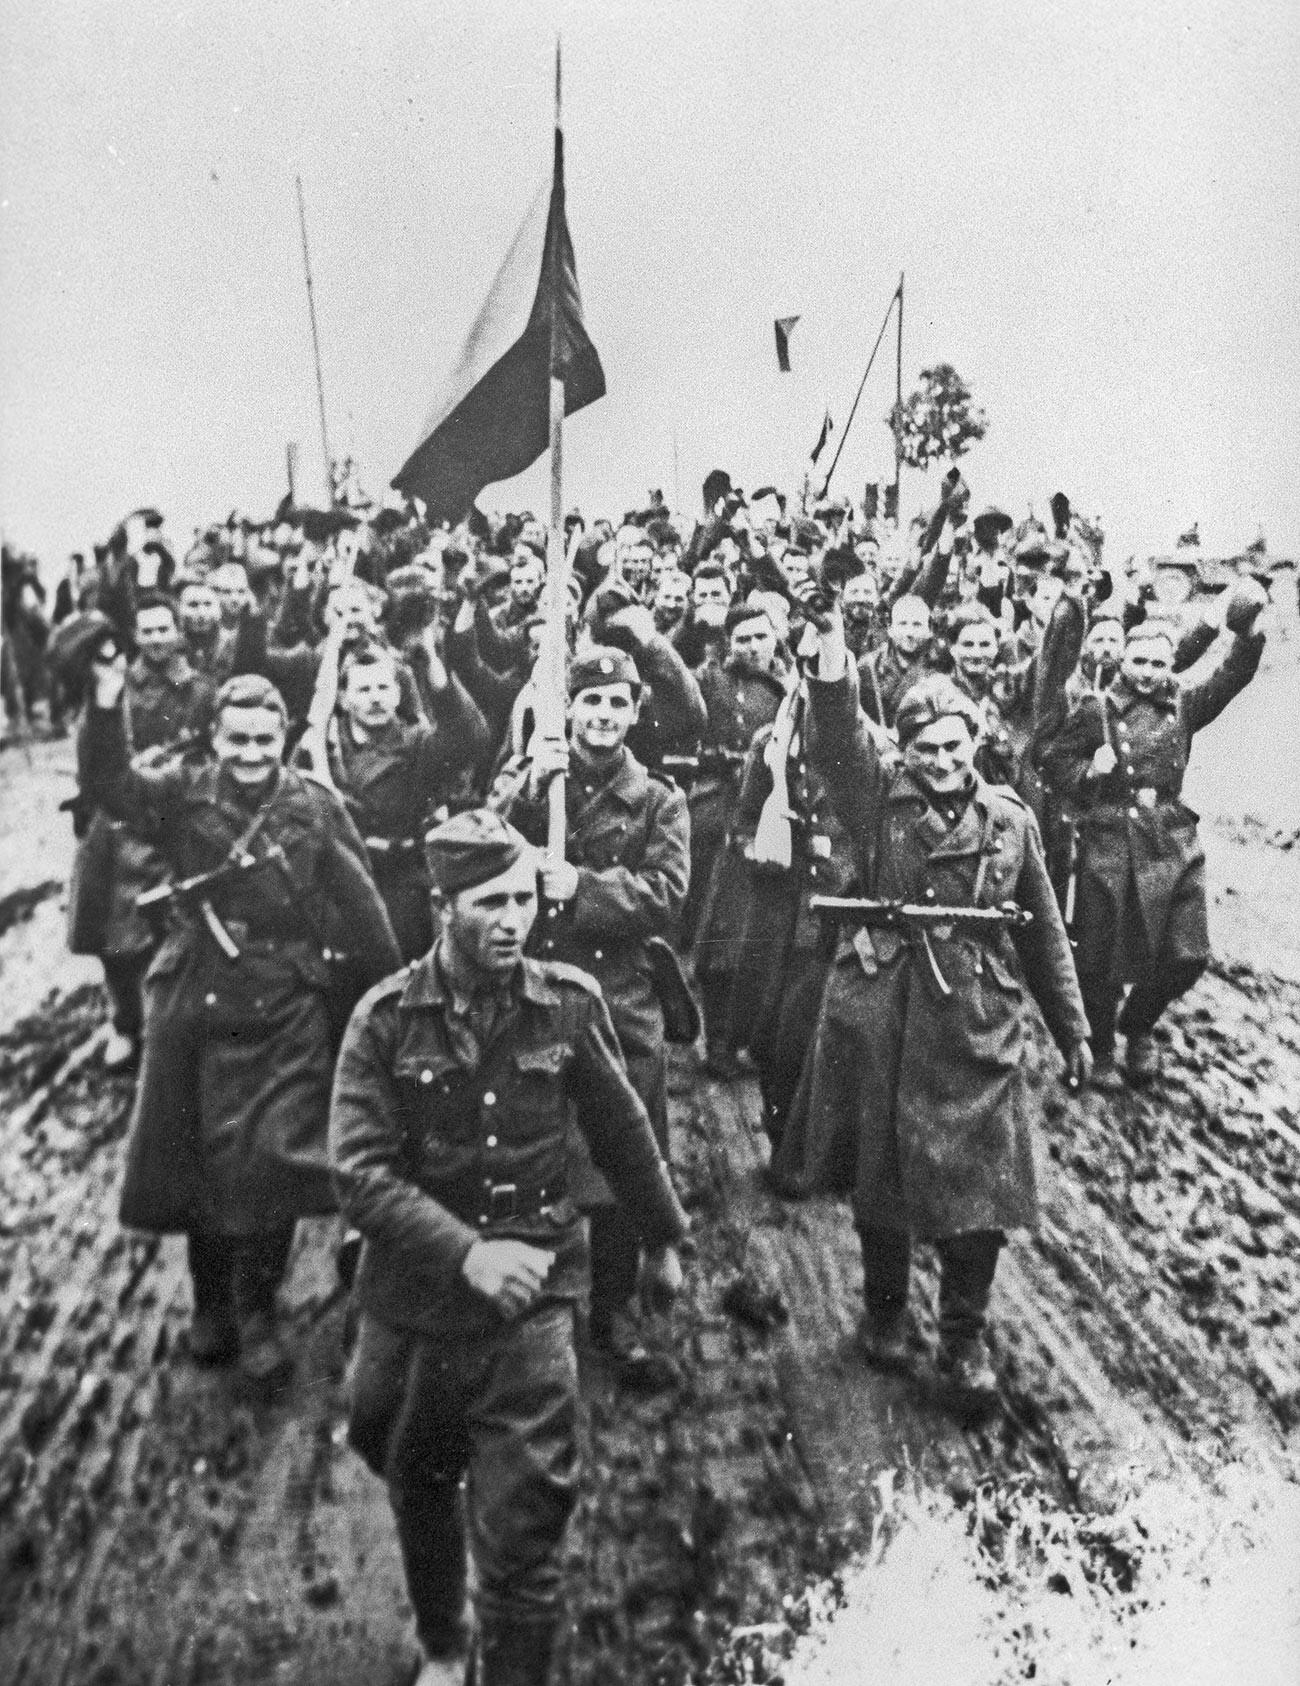 La Gran Guerra Patria de 1941-1945. Soldados del 1er Cuerpo del Ejército Checoslovaco. Del archivo del Museo Central de las Fuerzas Armadas de la URSS.